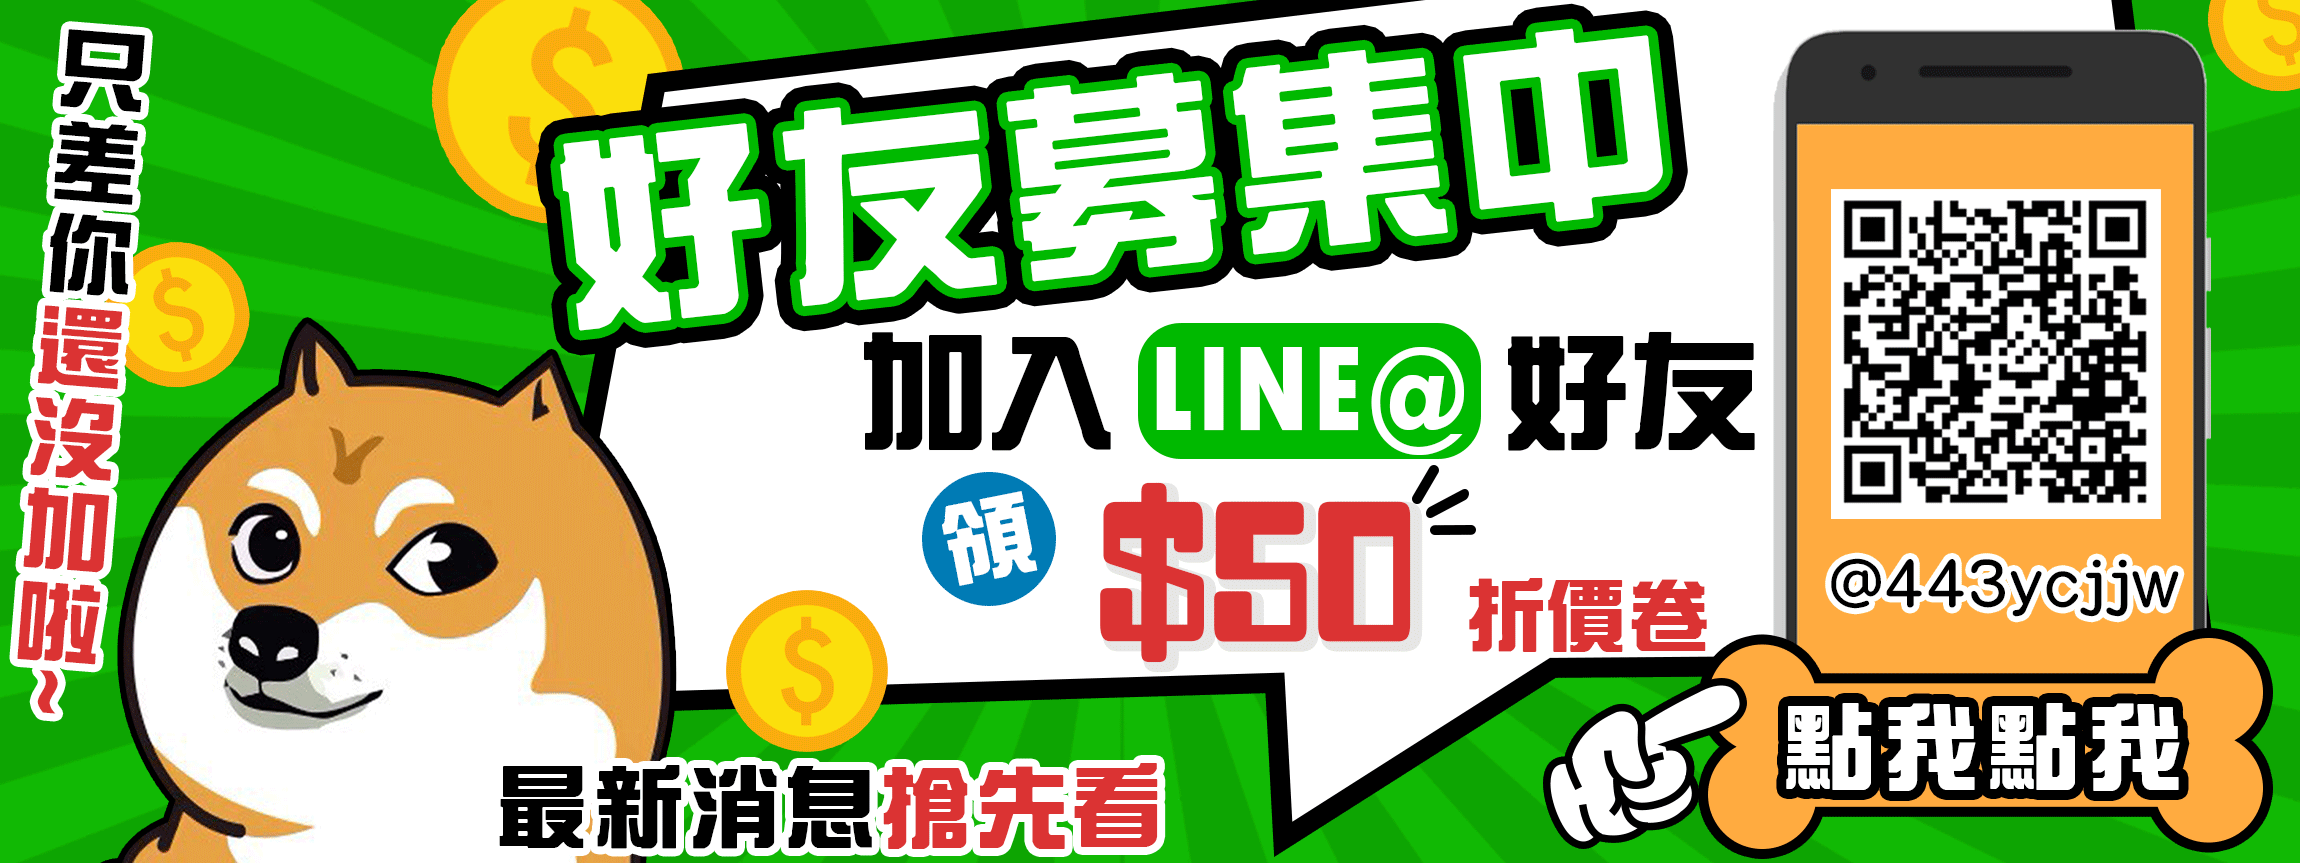 加入毛寶寶官方LINE@領100元折價卷，另外還可以搶先收到我們最新的消息與產品～趕快加入我們吧！